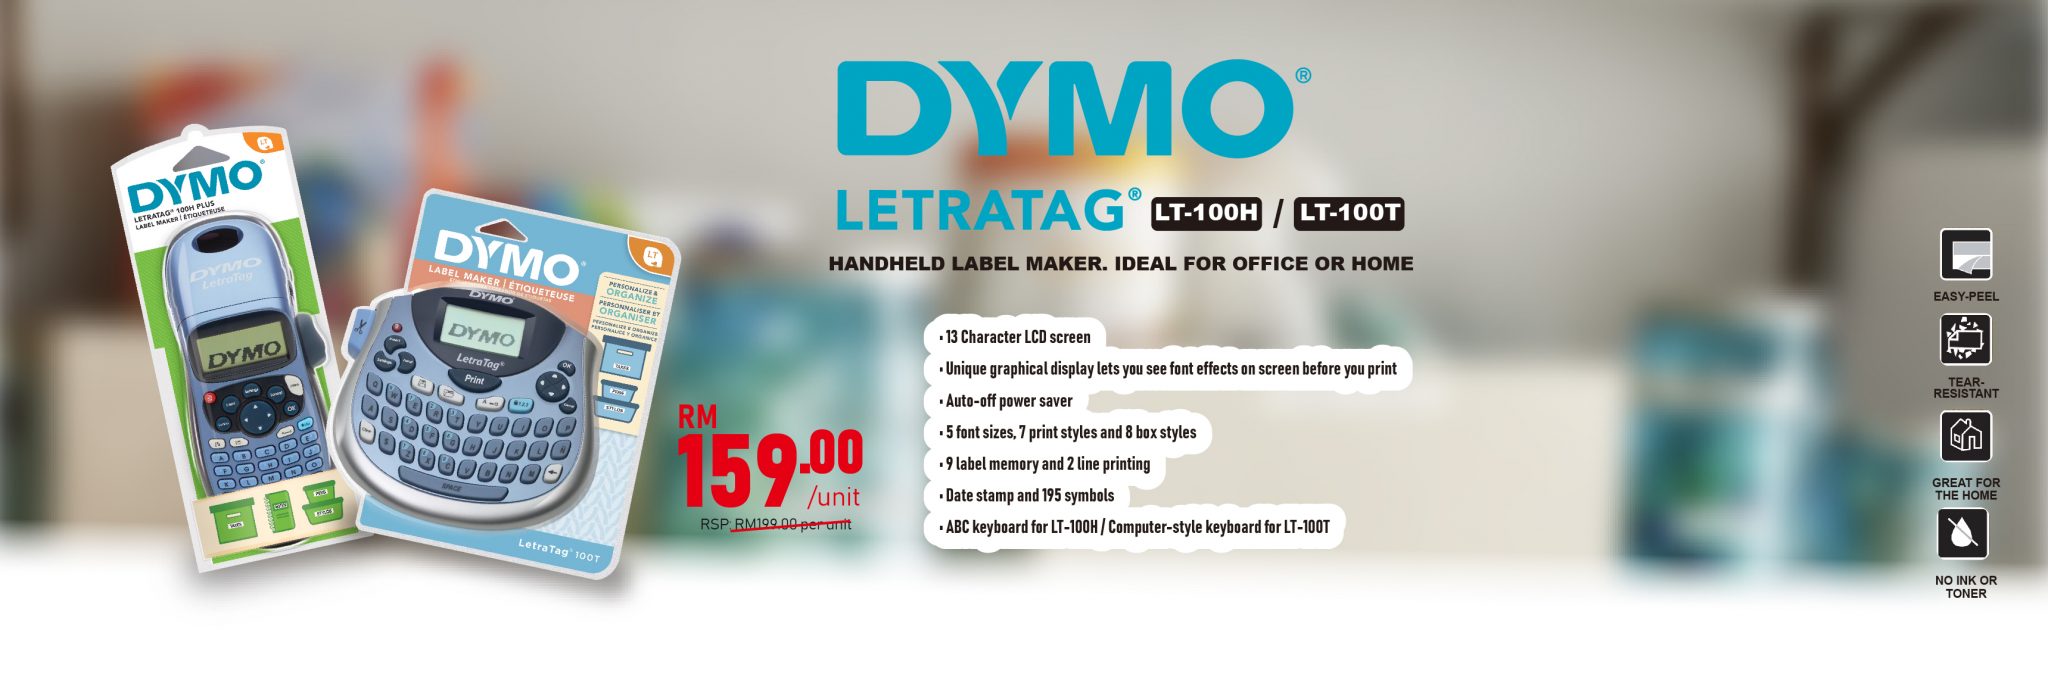 DYMO LT-100T_LT-100H_website-01